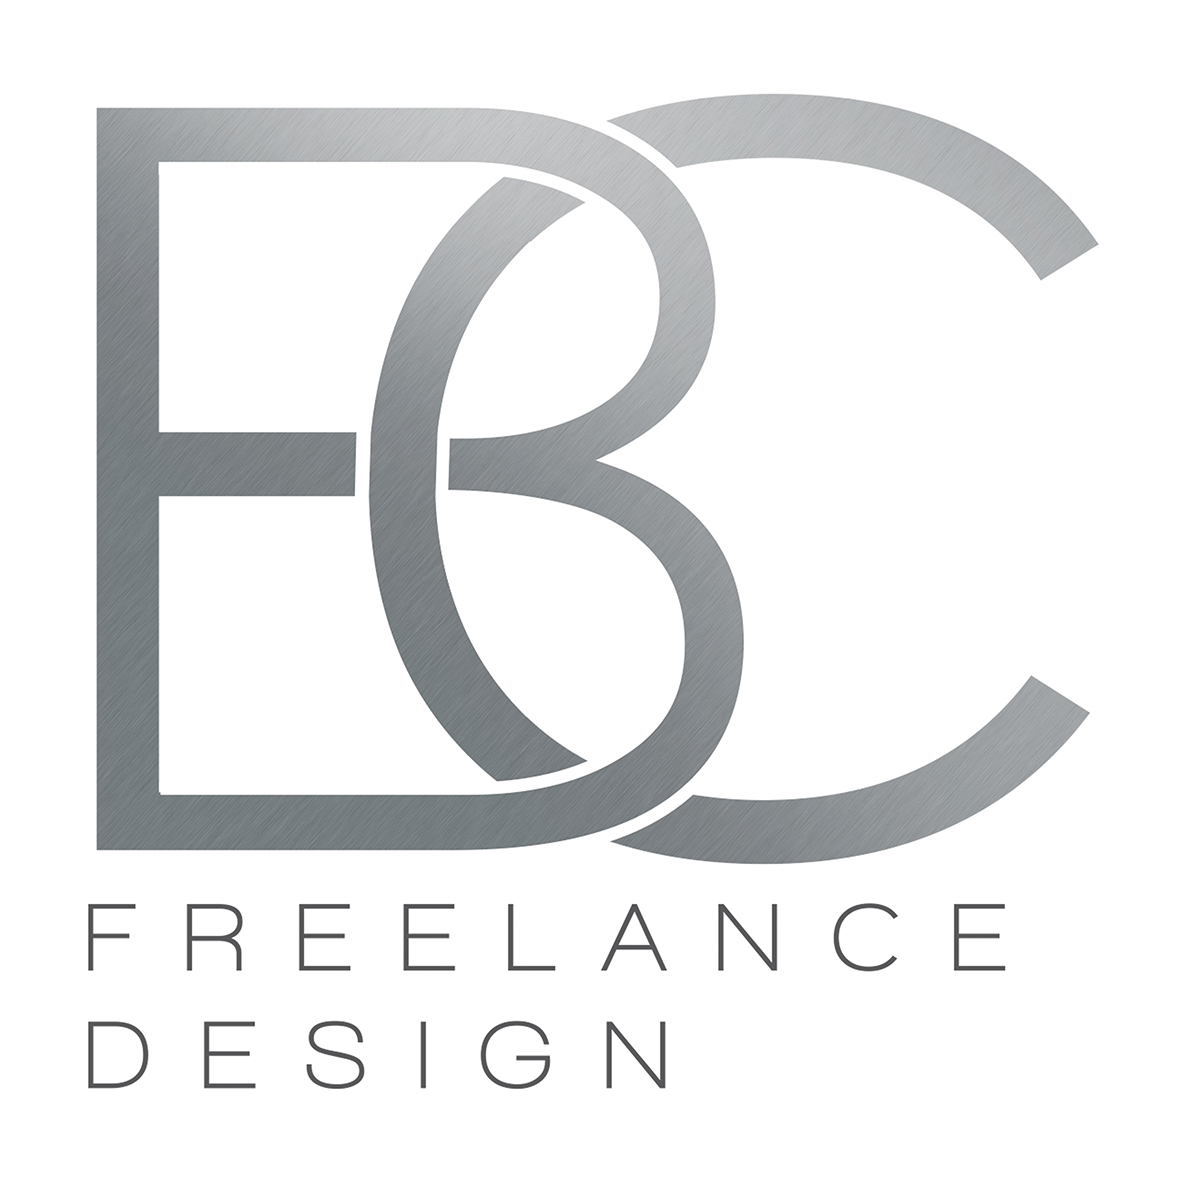 BC freelance design - Kingaroy Accommodation